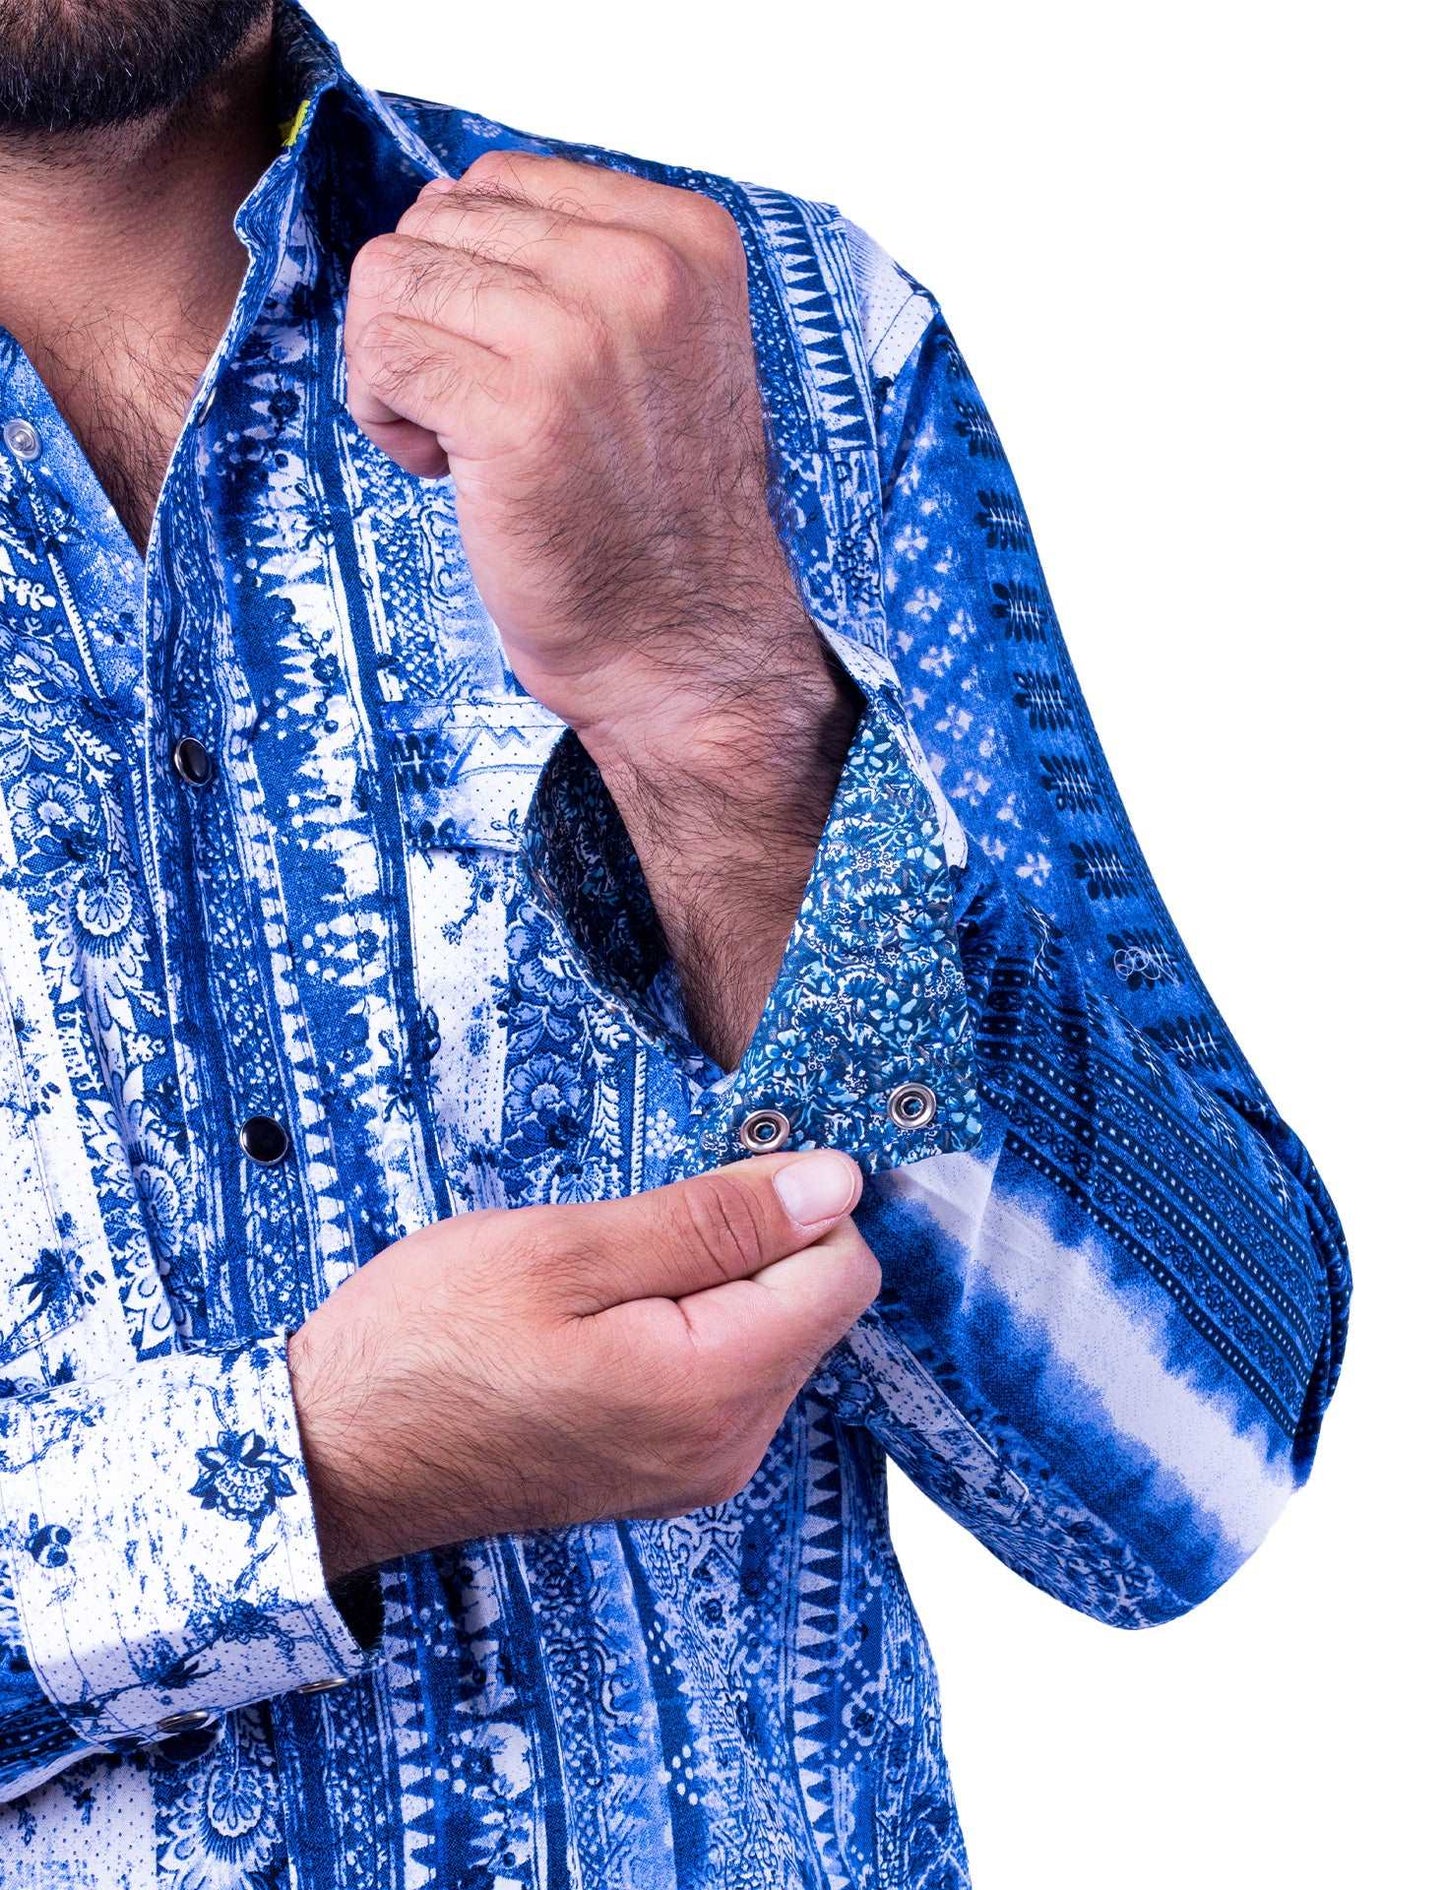 Camisa Vaquera color Ivory pint en tonalidades Azules CHH120